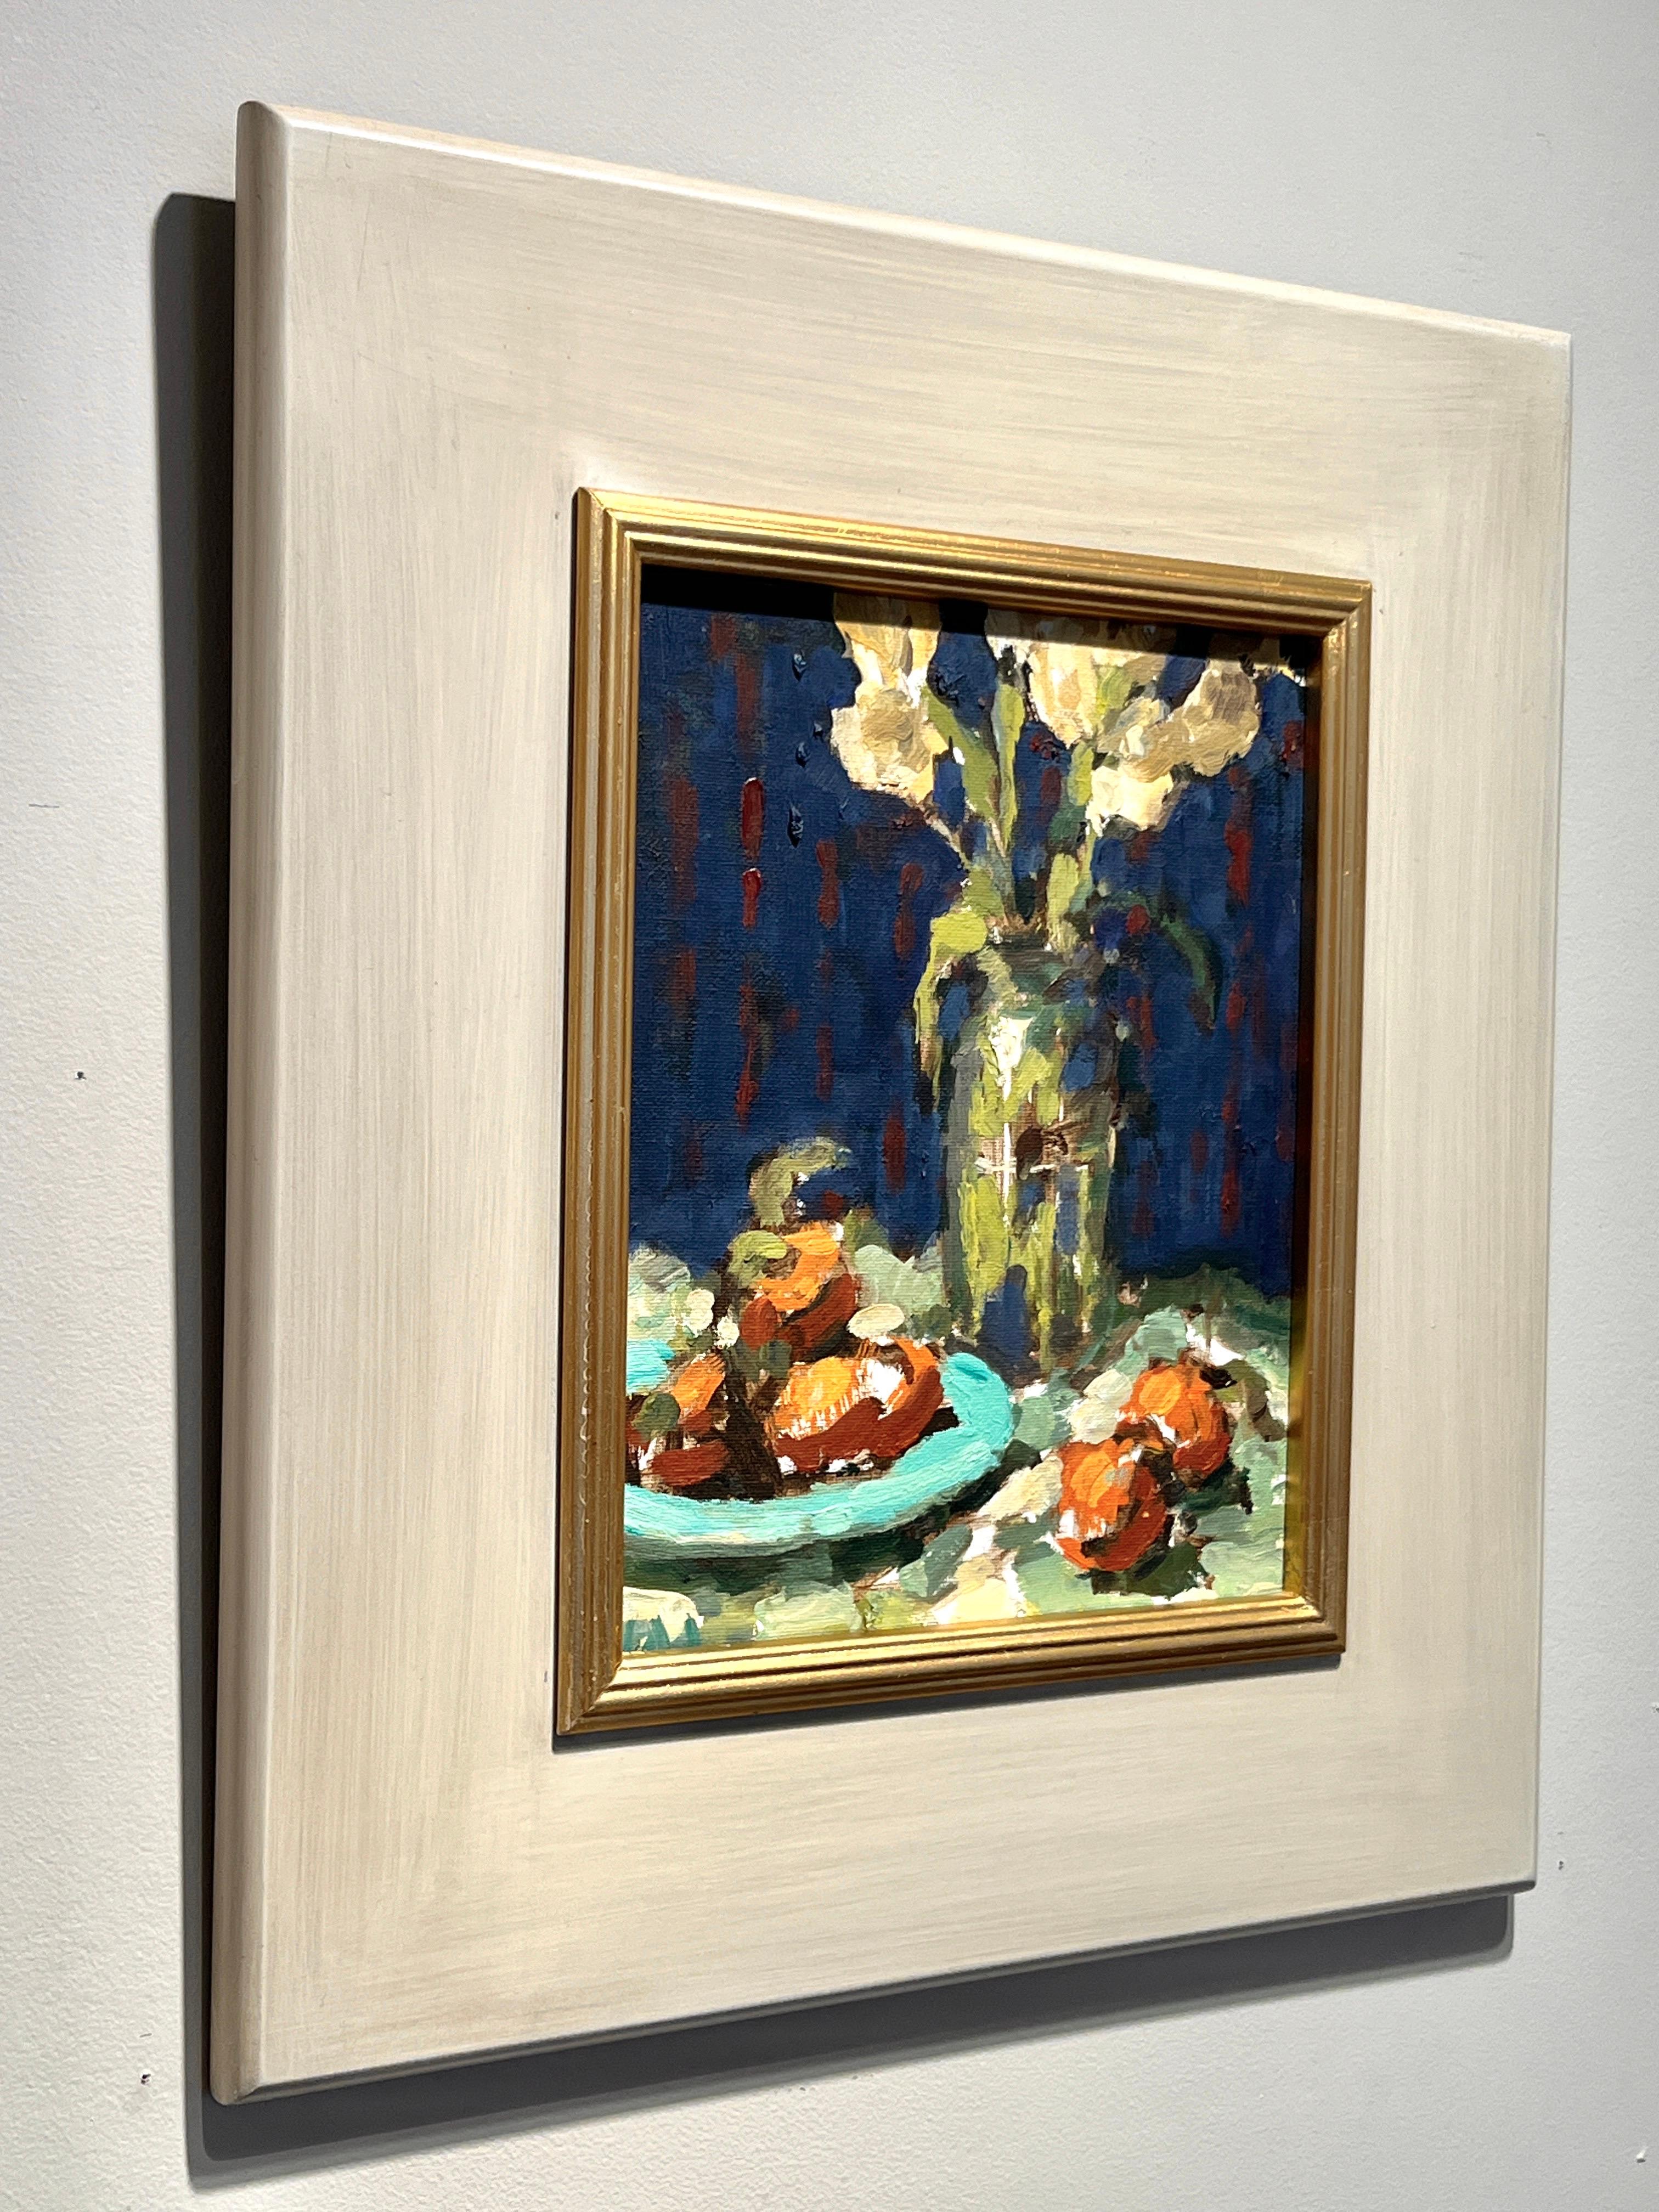 The Turquoise Plate est une peinture à l'huile originale sur panneau de l'artiste établi Tim McGuire. L'œuvre est encadrée dans un joli cadre blanc os avec lèvre dorée, ce qui donne à cette œuvre des dimensions totales d'environ 16x14 pouces.

Se